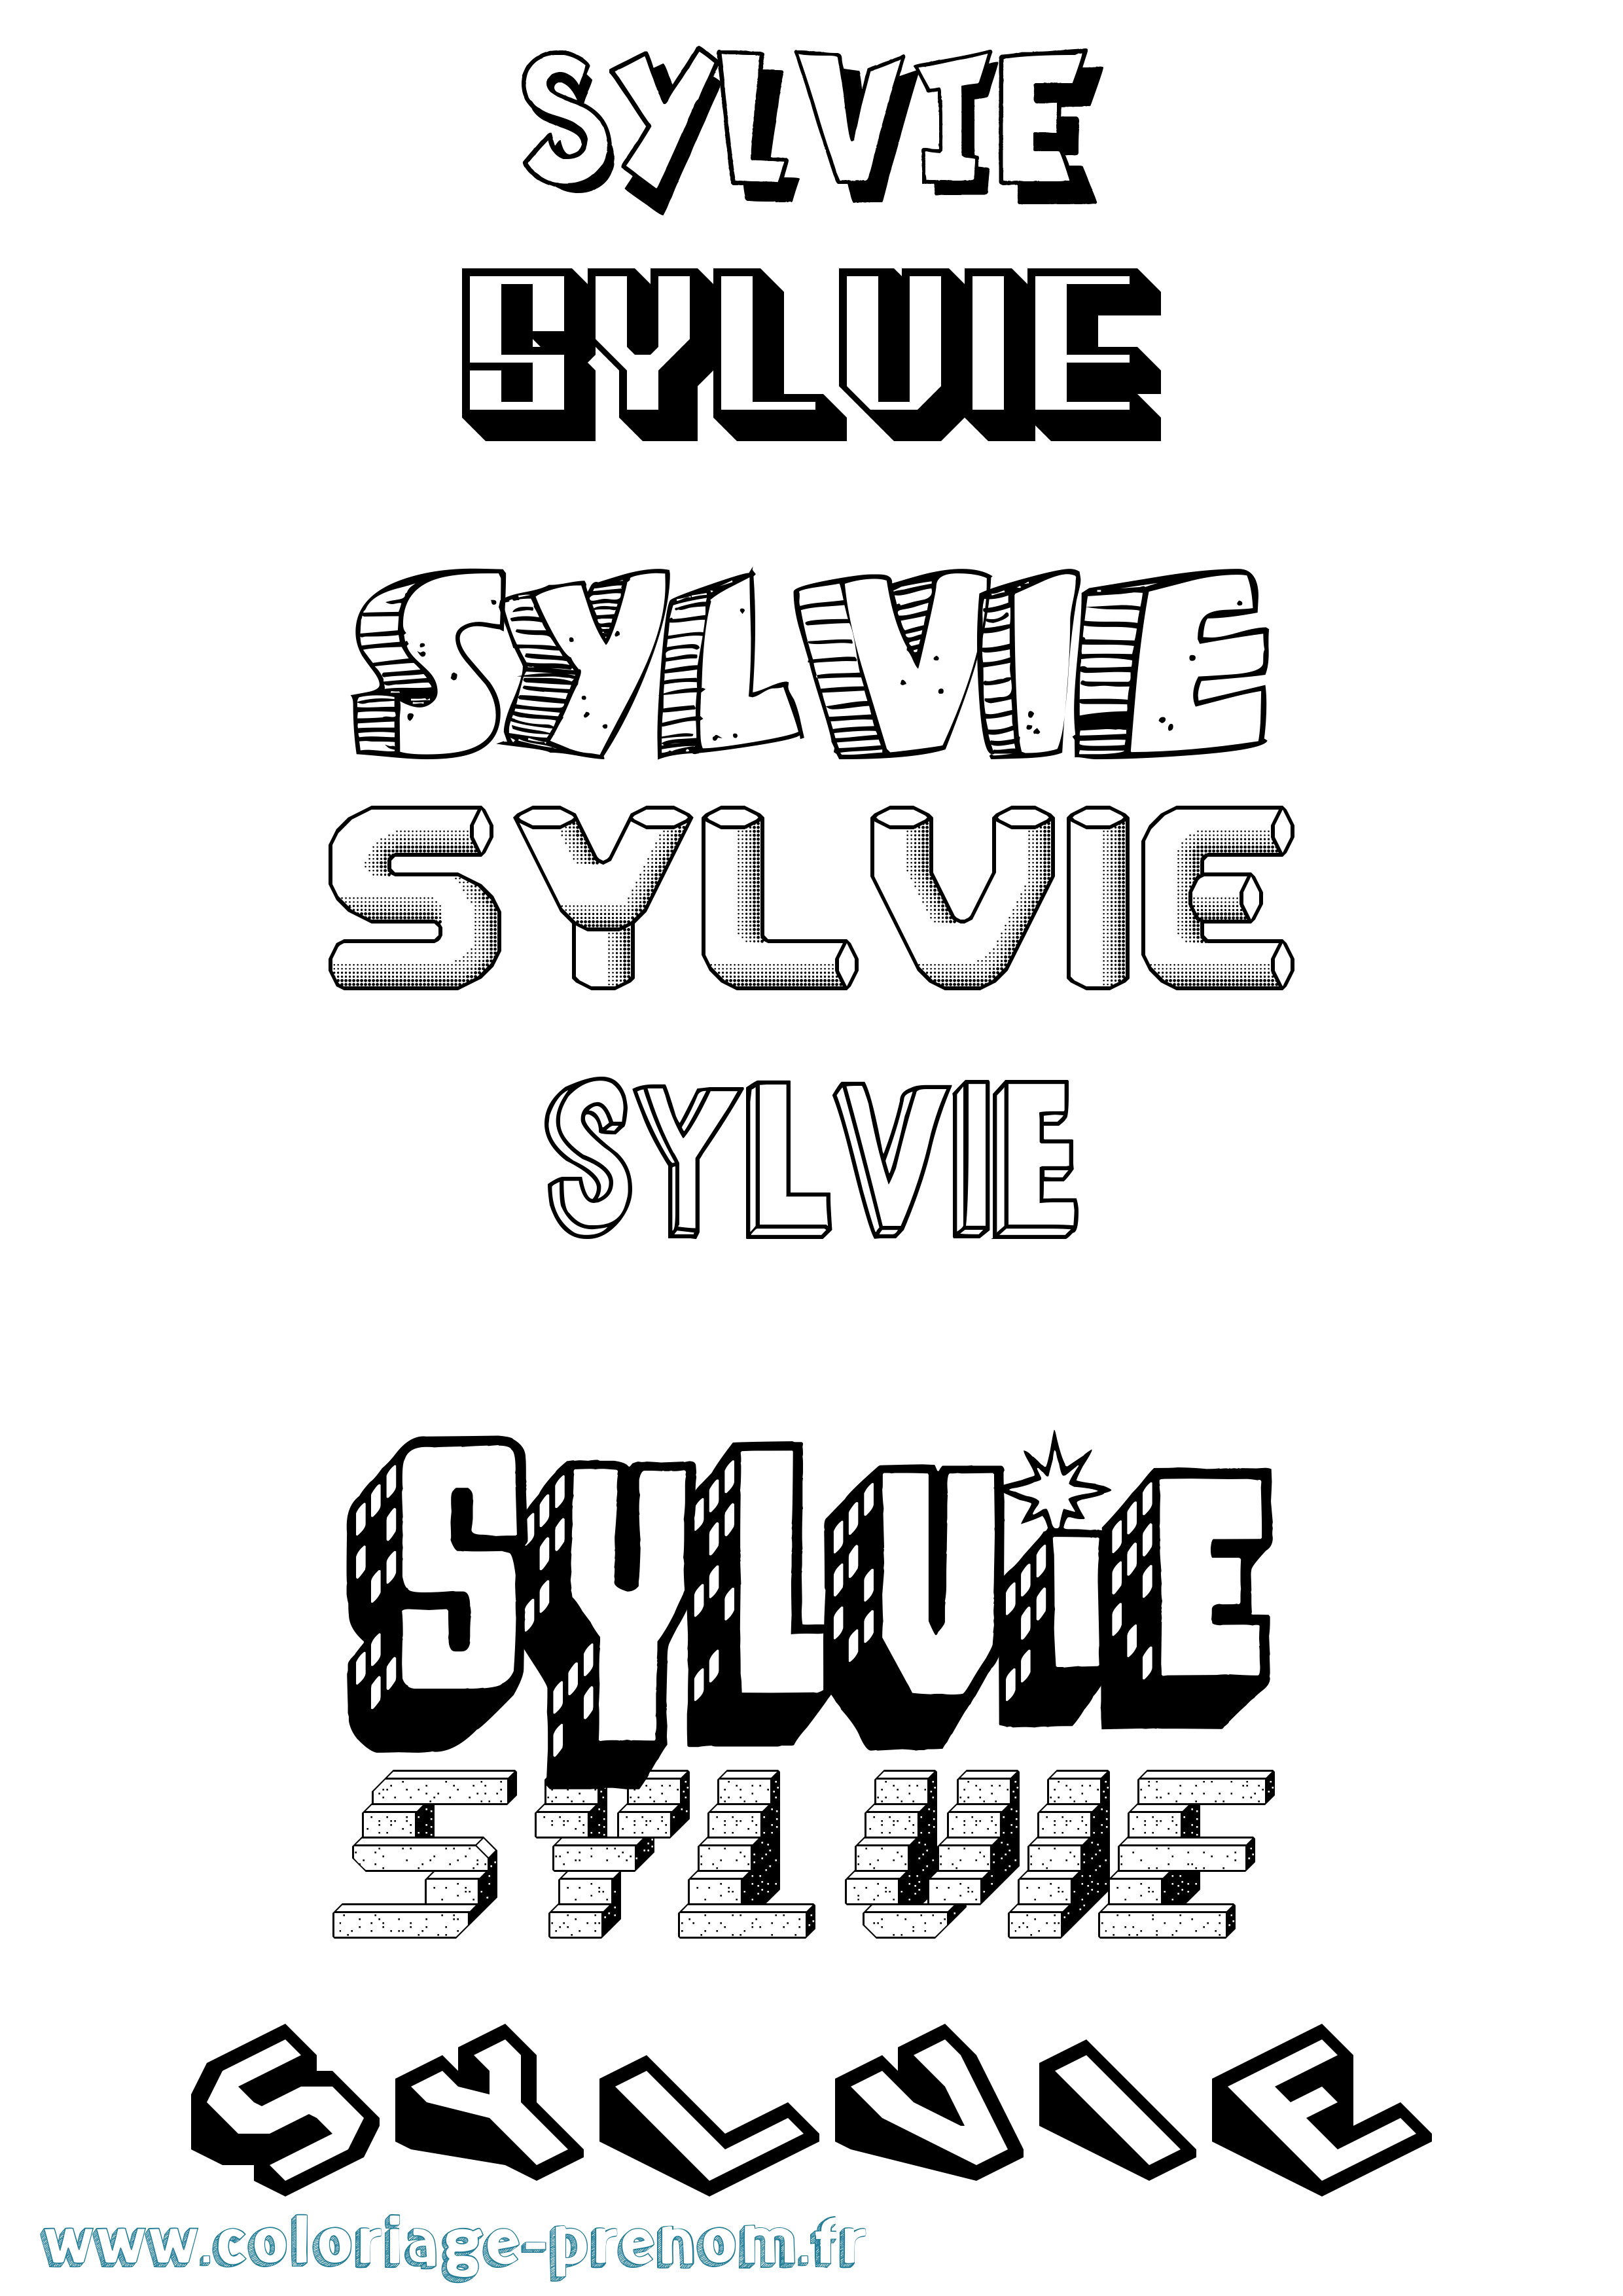 Coloriage prénom Sylvie